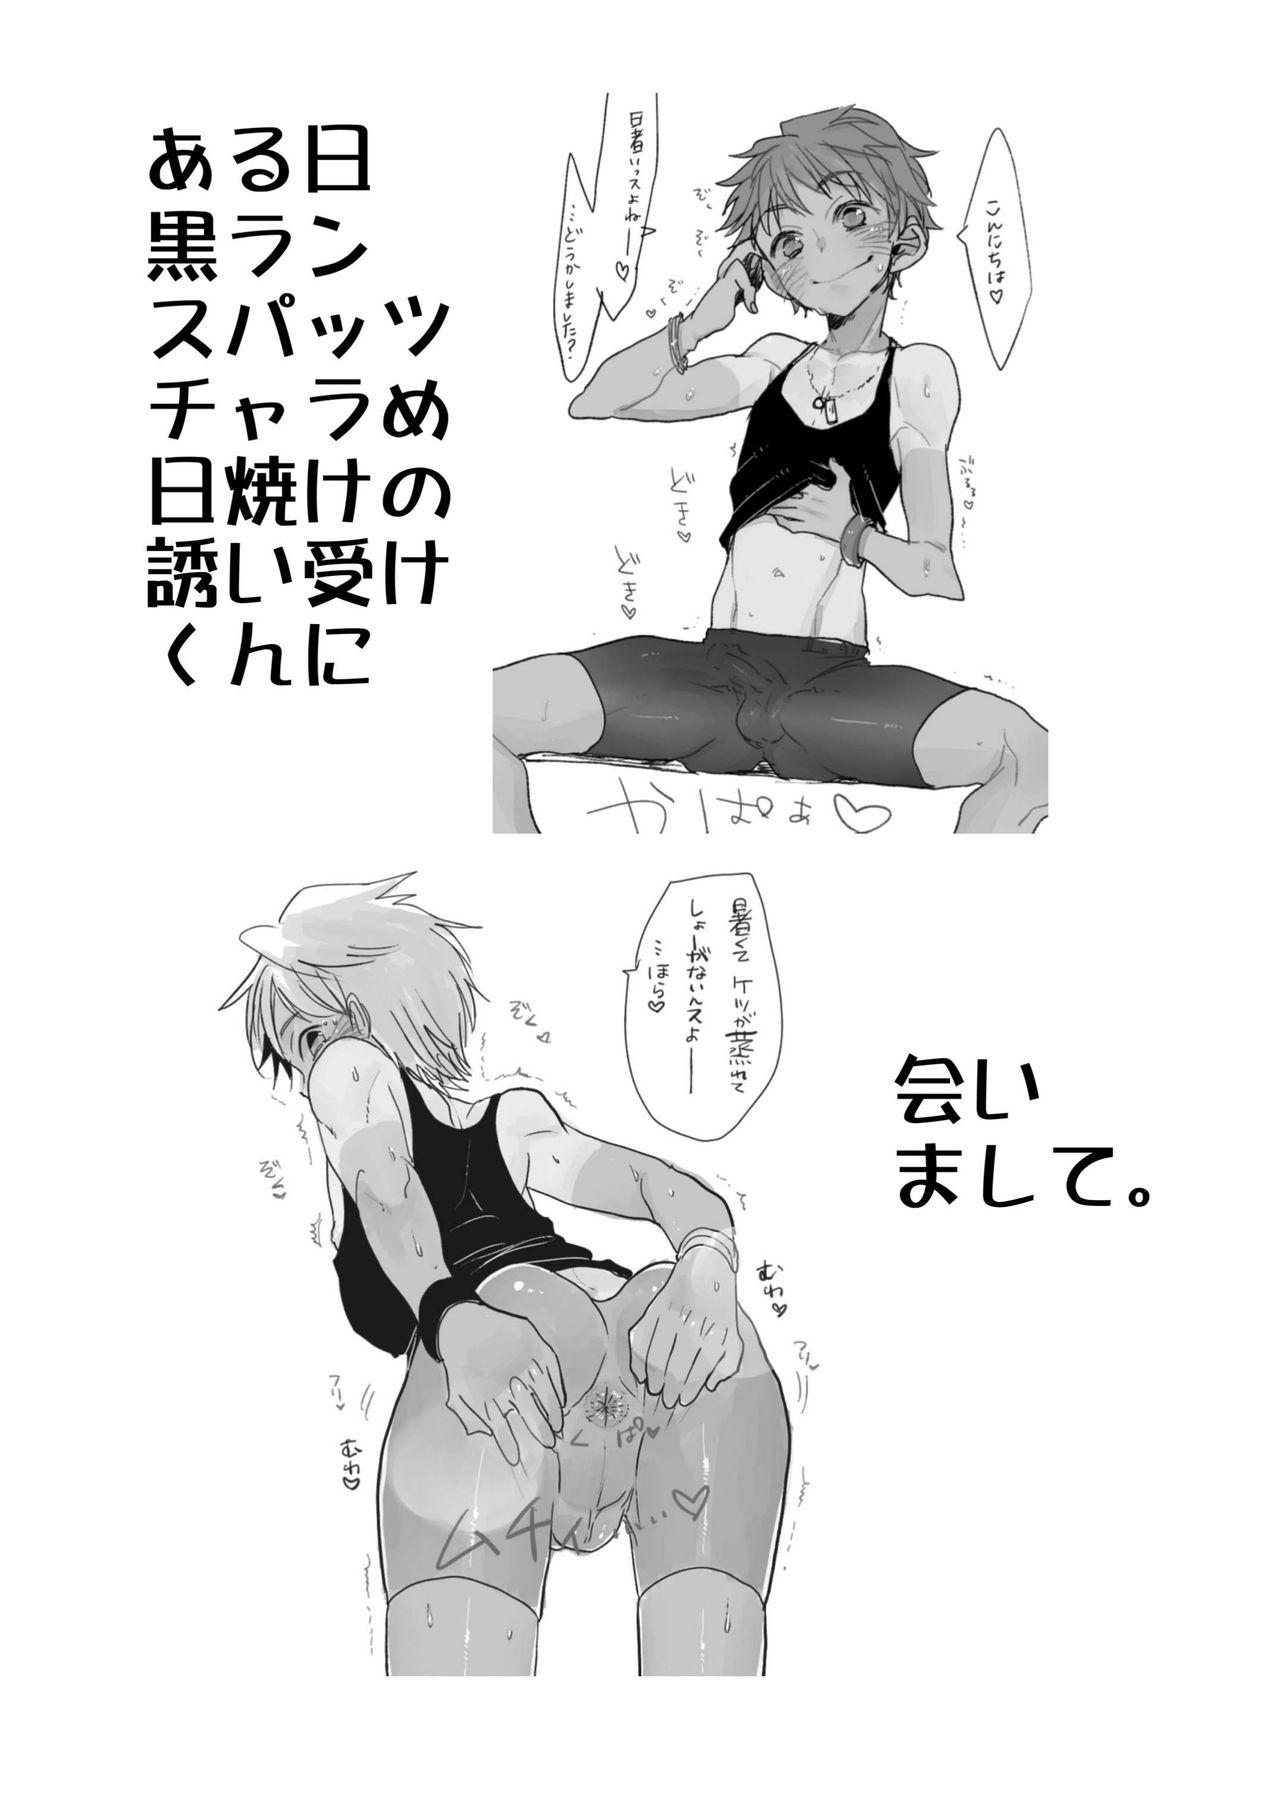 Orgasmo Aru Hi Kuro Run Spats Hiyake Charame no Sasoiuke-kun ni Aimashite. - Original Skinny - Page 2